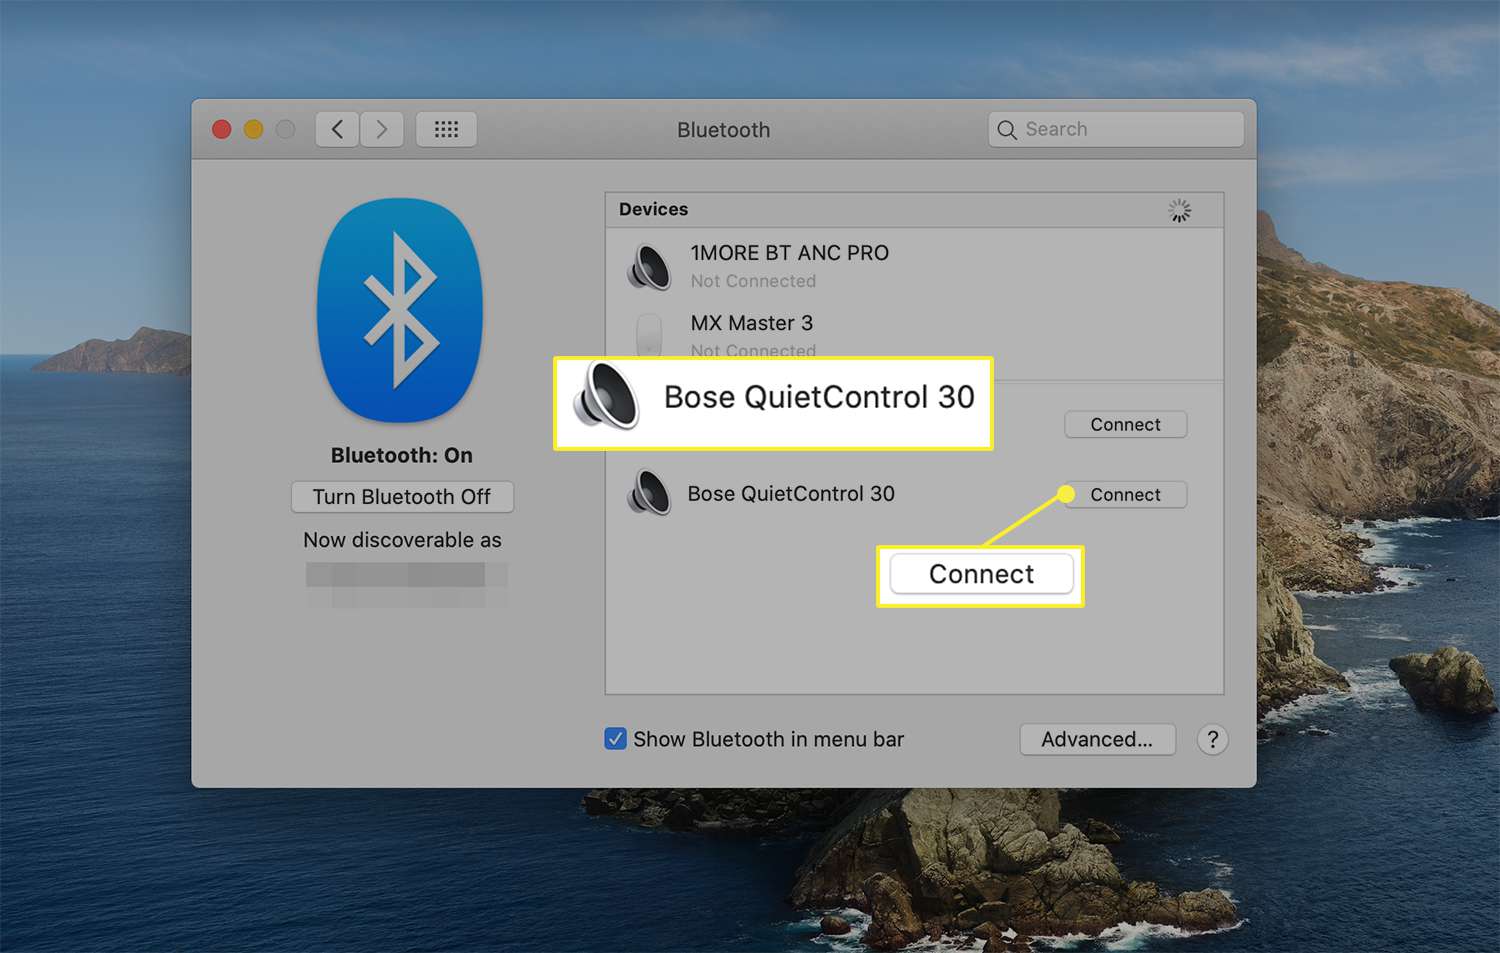 Verbindingsoptie naast een beschikbaar draadloos apparaat uit macOS Bluetooth-voorkeuren